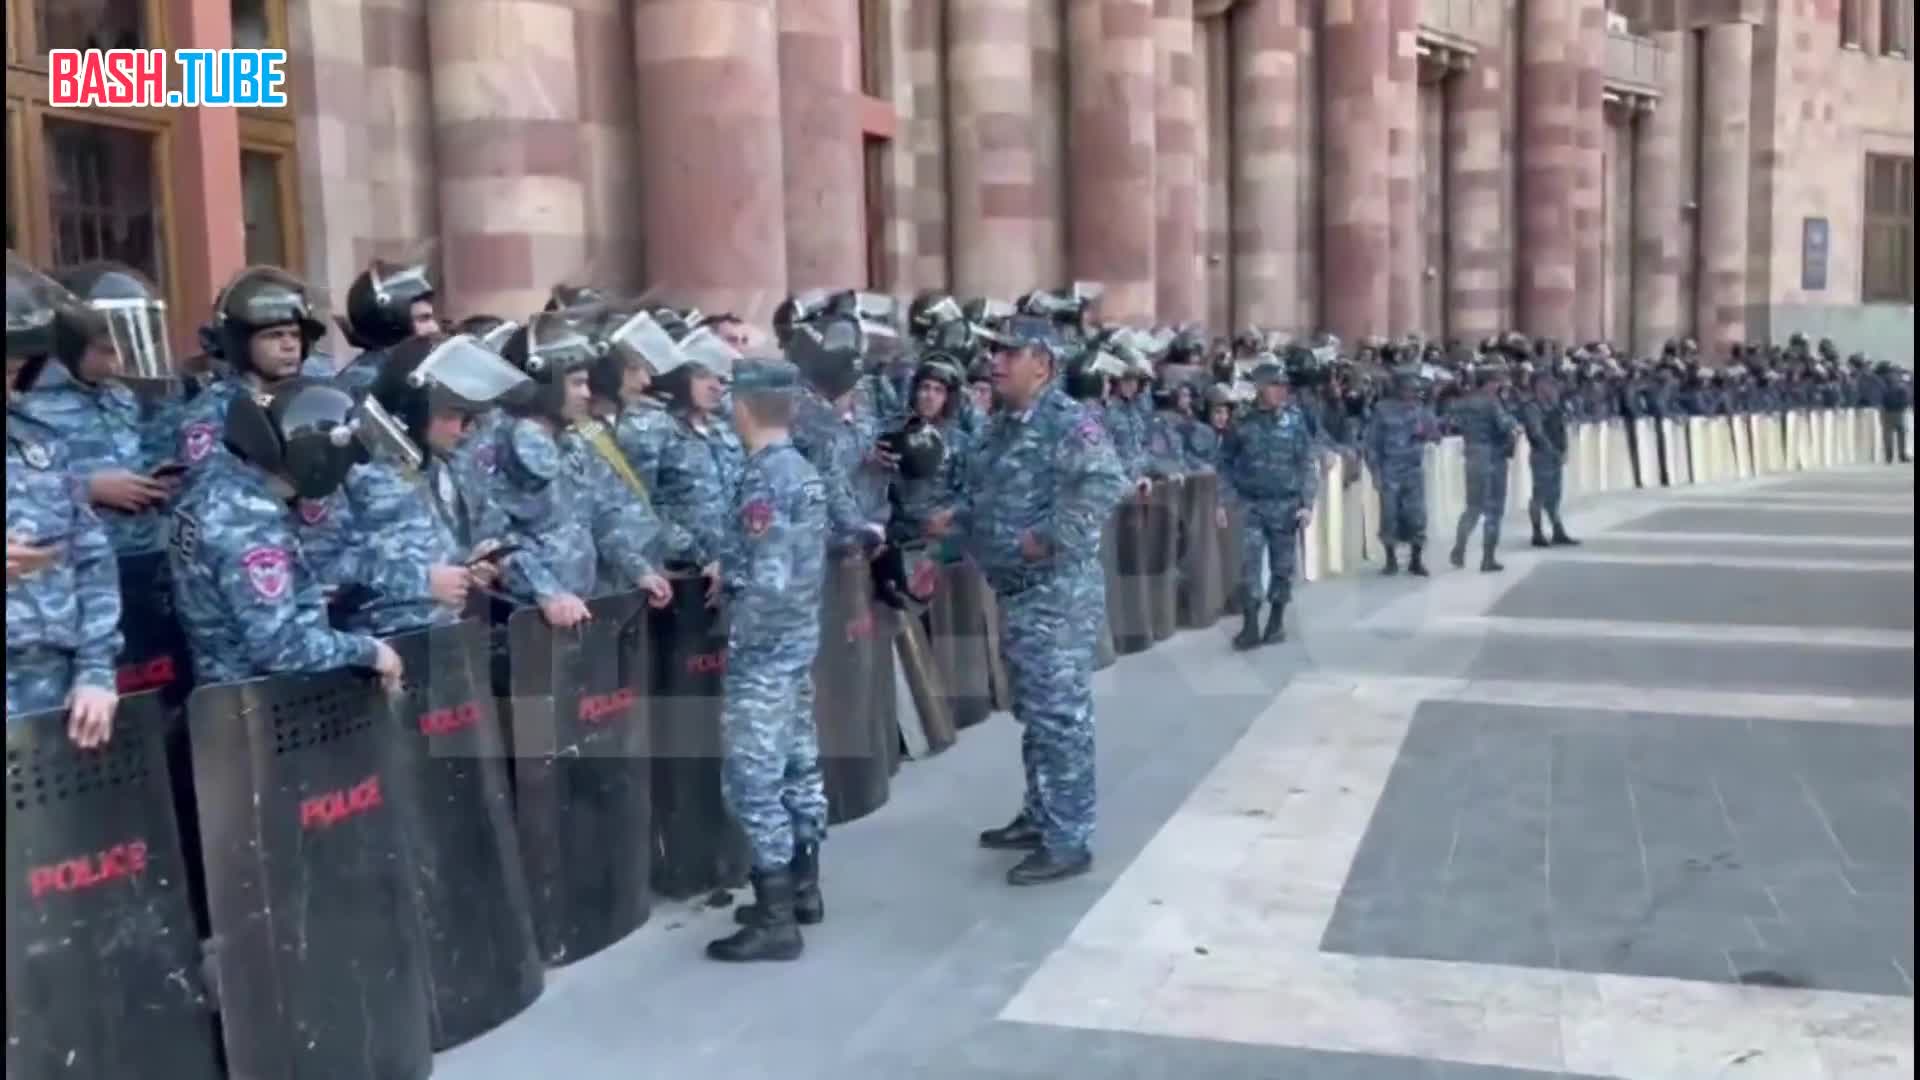  Обстановка на площади Республики в Ереване сейчас спокойная